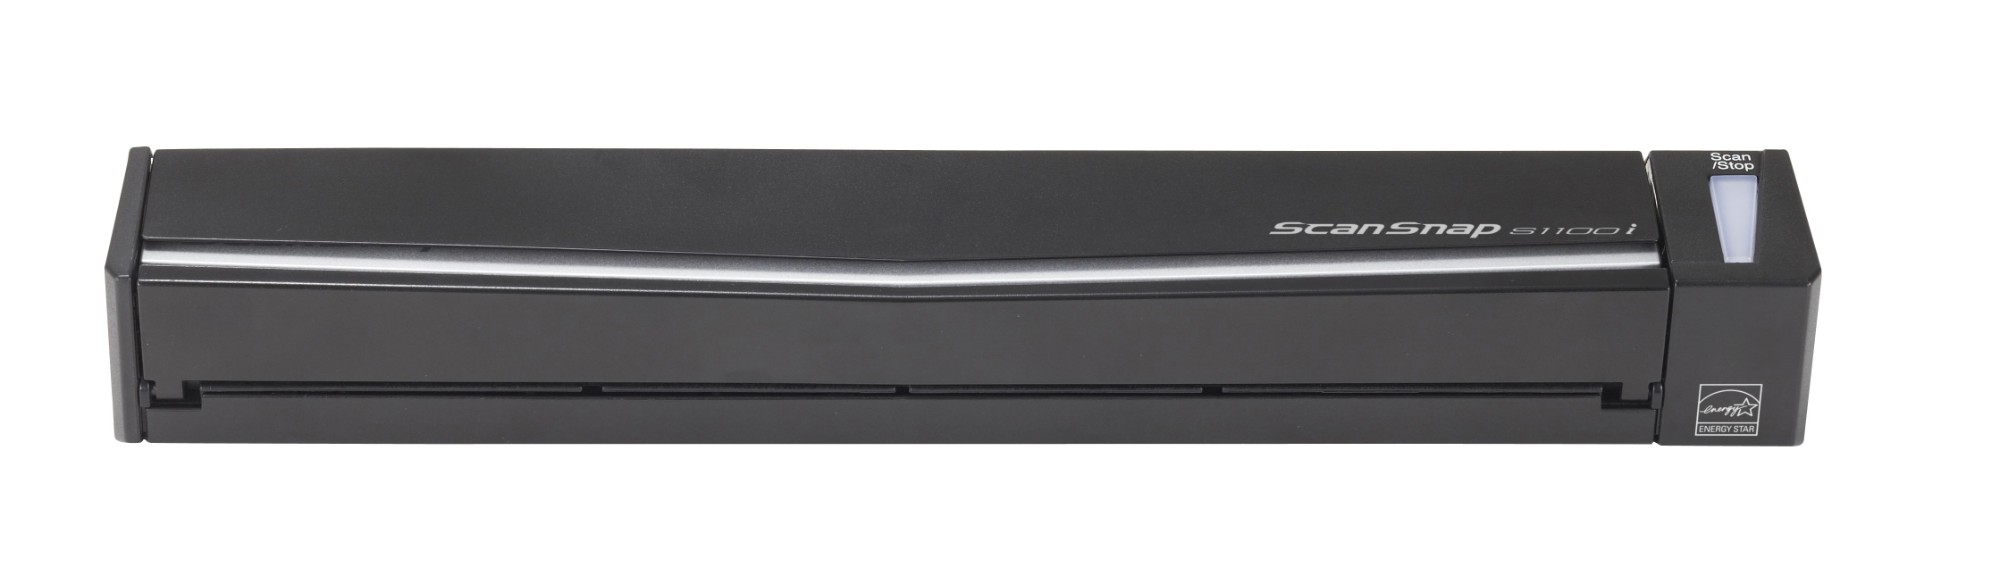 Fujitsu ScanSnap S1100i Alimentador continuo de documentos + escáner de alimentación de hojas 600 x 600 DPI A4 Negro